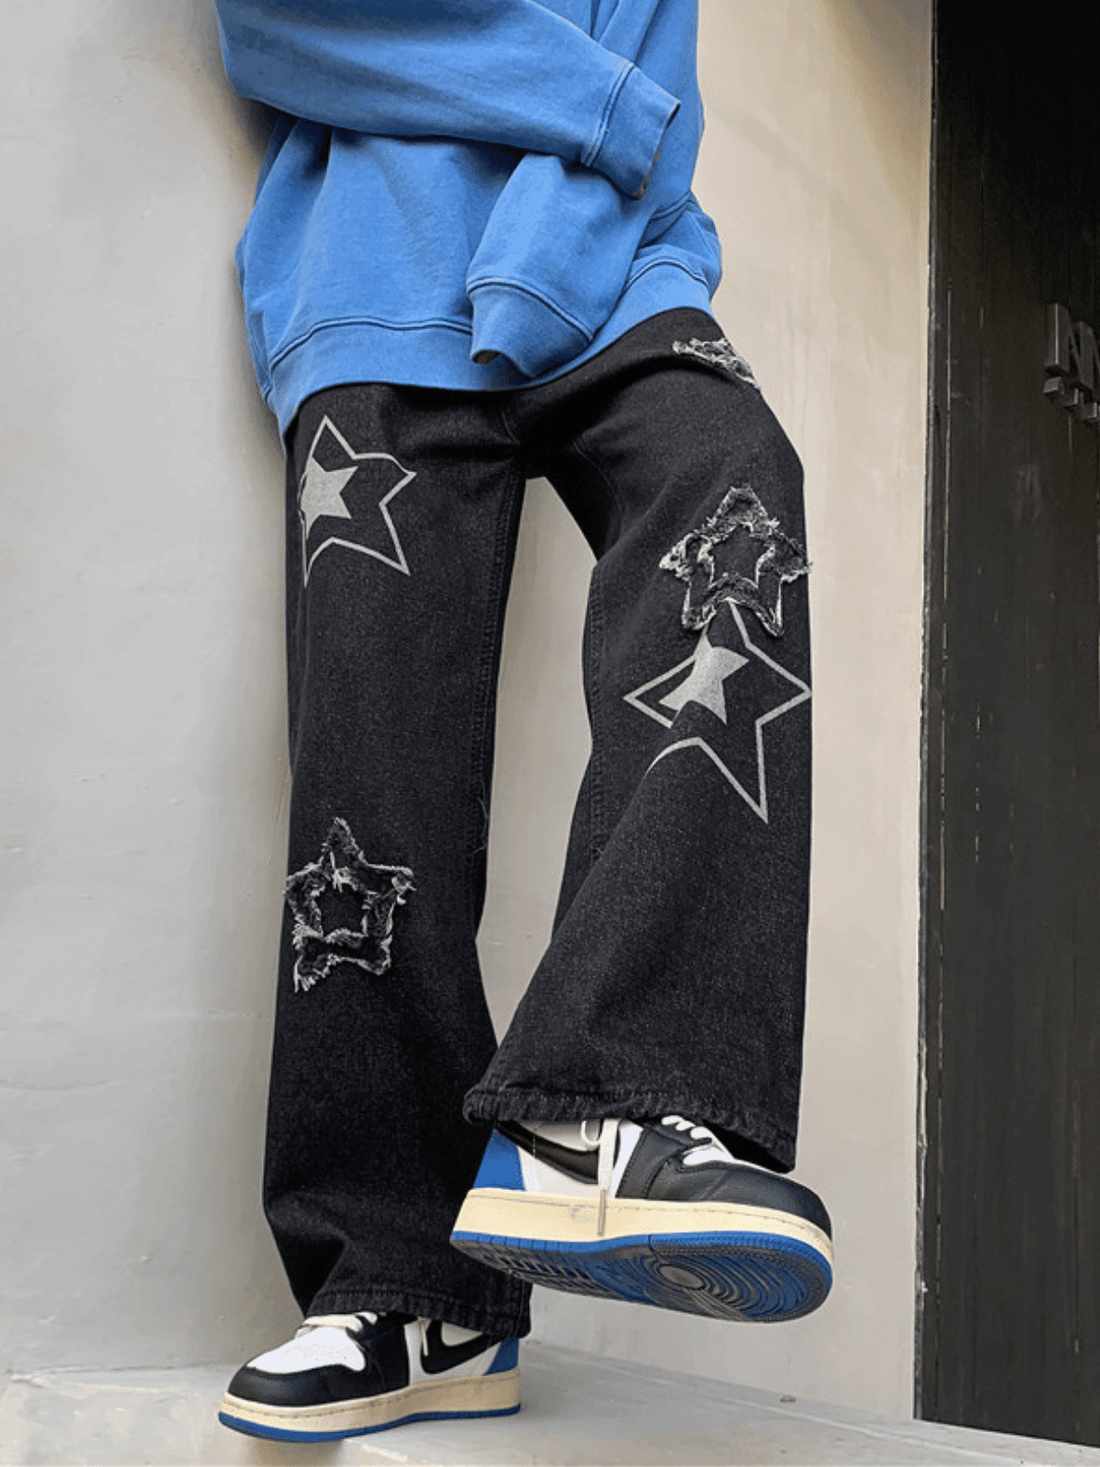 STAR Z - Baggy Print Jeans Black | Teenwear.eu